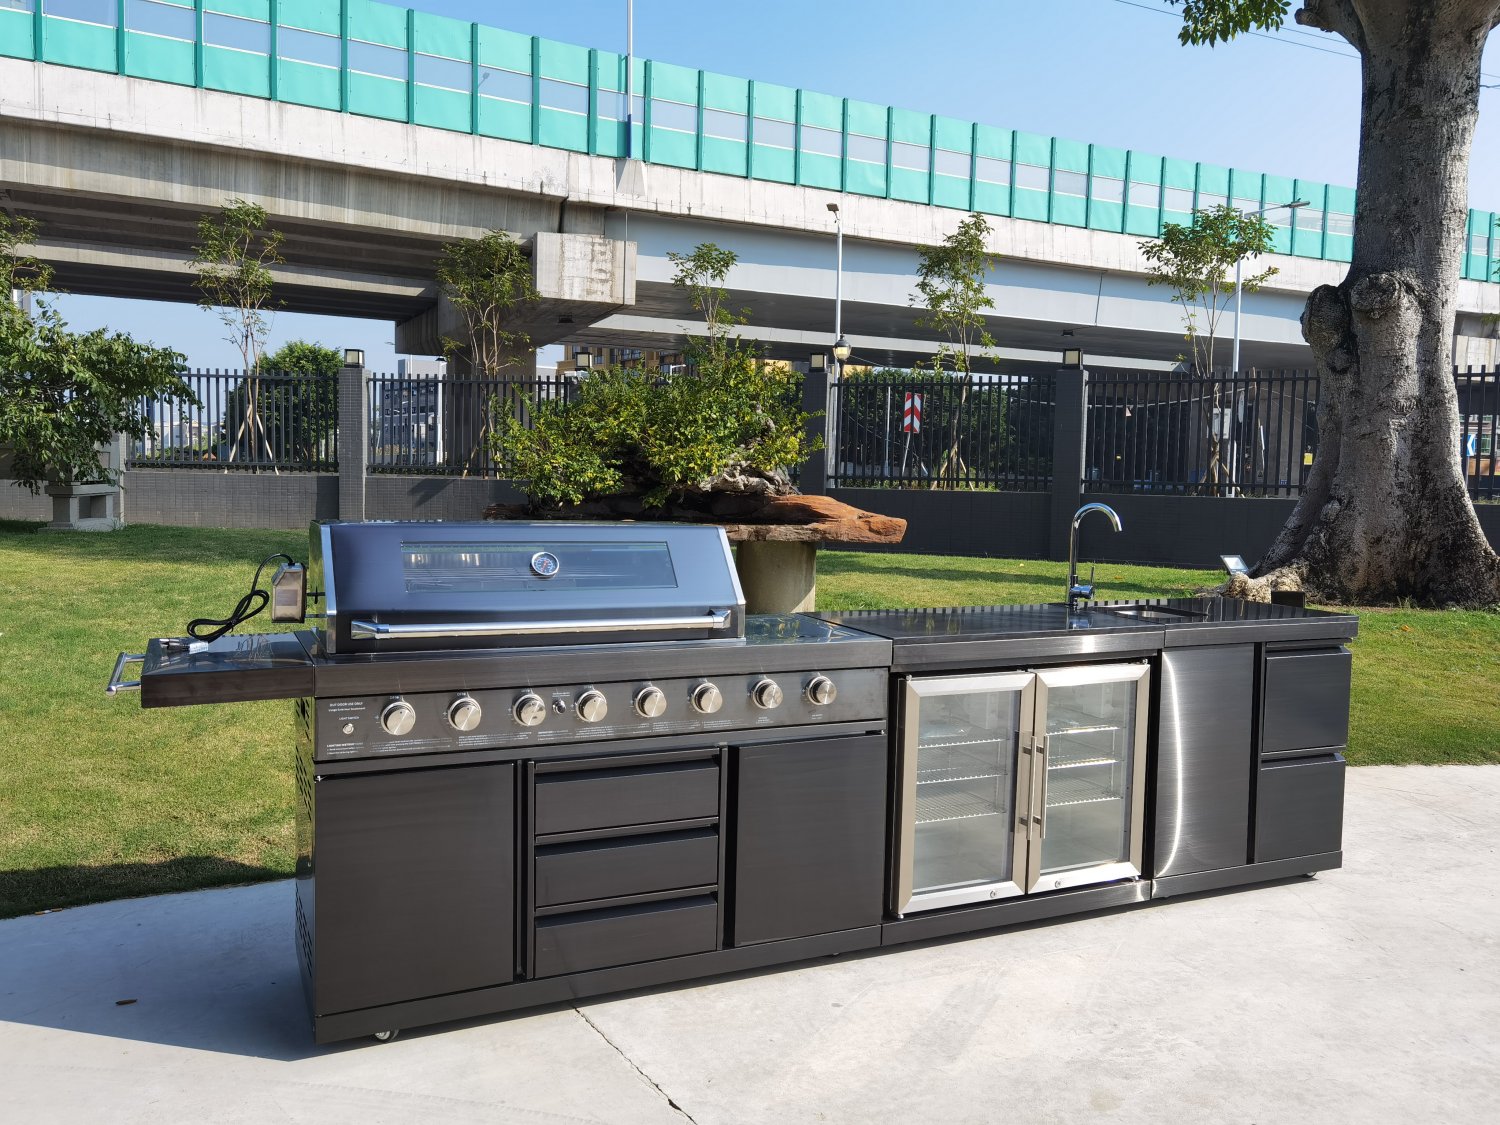 grill burner sink outdoor kitchen